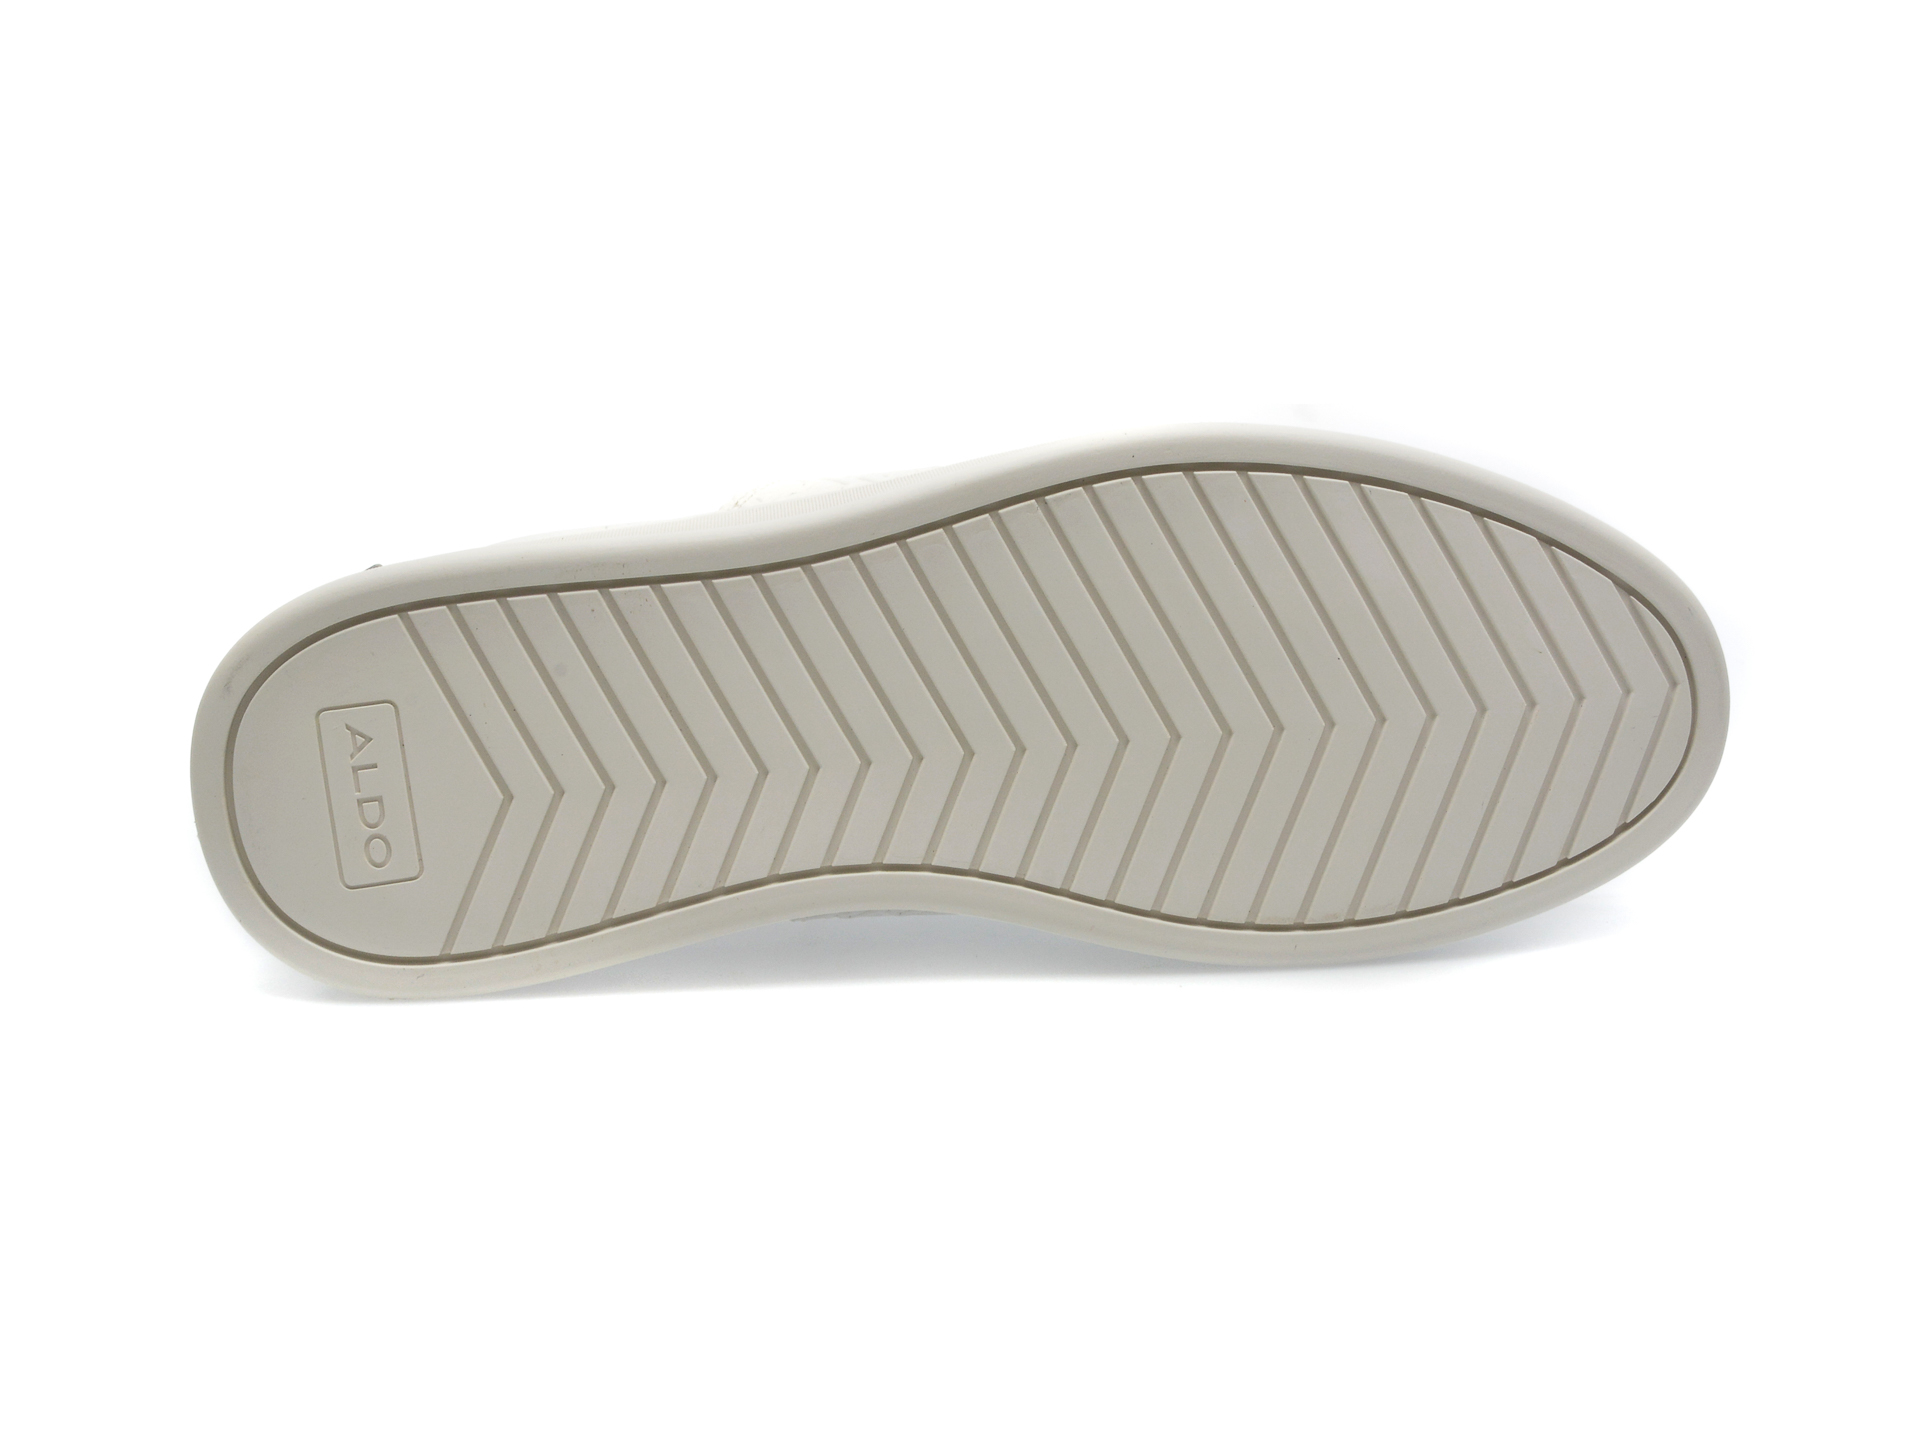 Pantofi ALDO albi, DAYO100, din piele ecologica